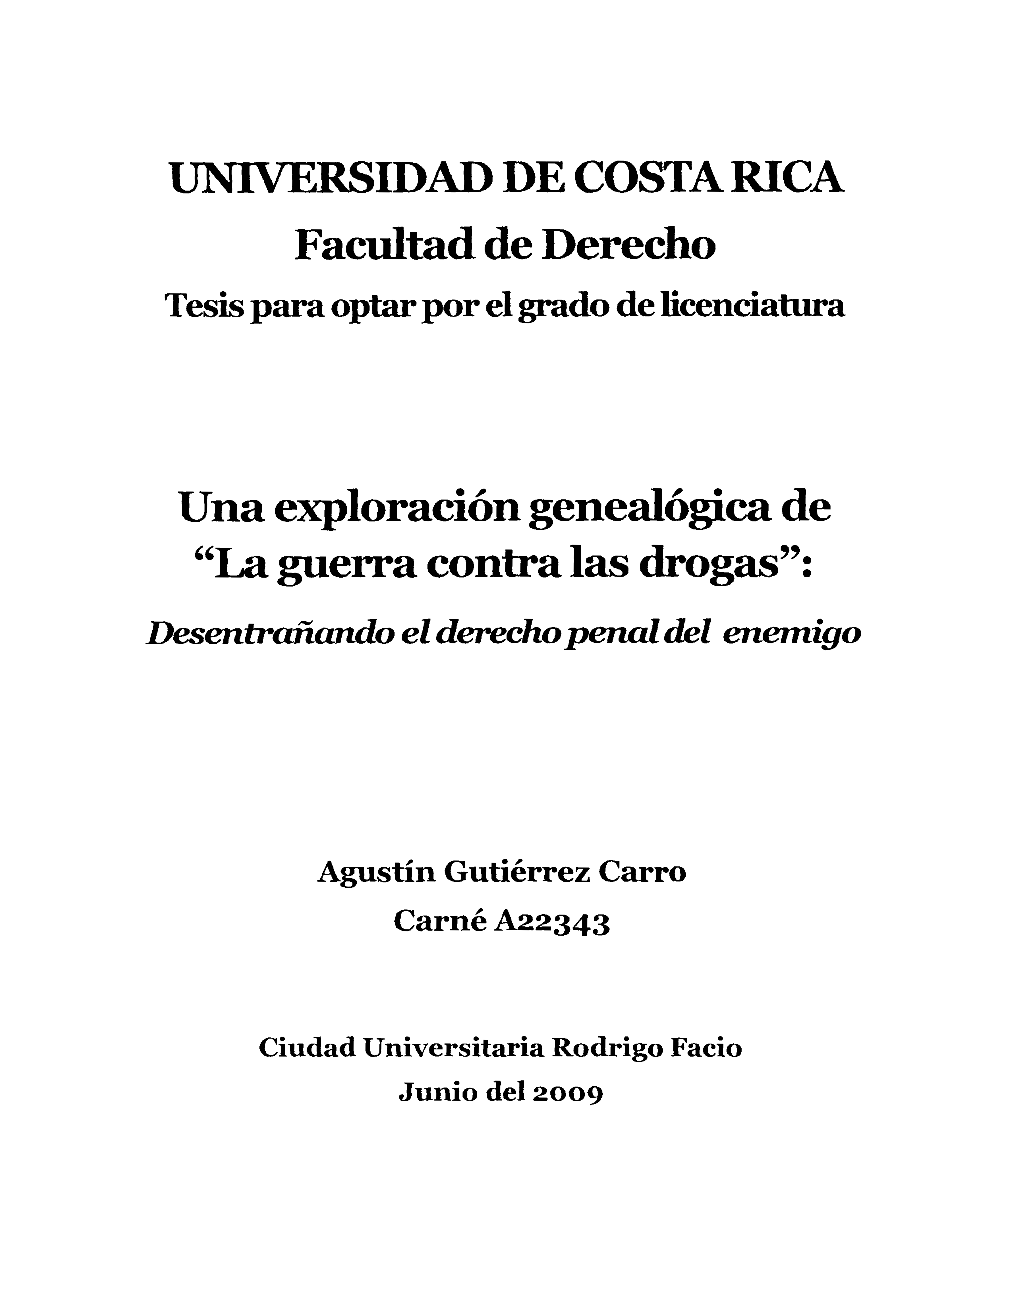 UNIVERSIDAD DE COSTA RICA Facultad De Derecho Tesis Para Optar Por El Grado De Licenciatura